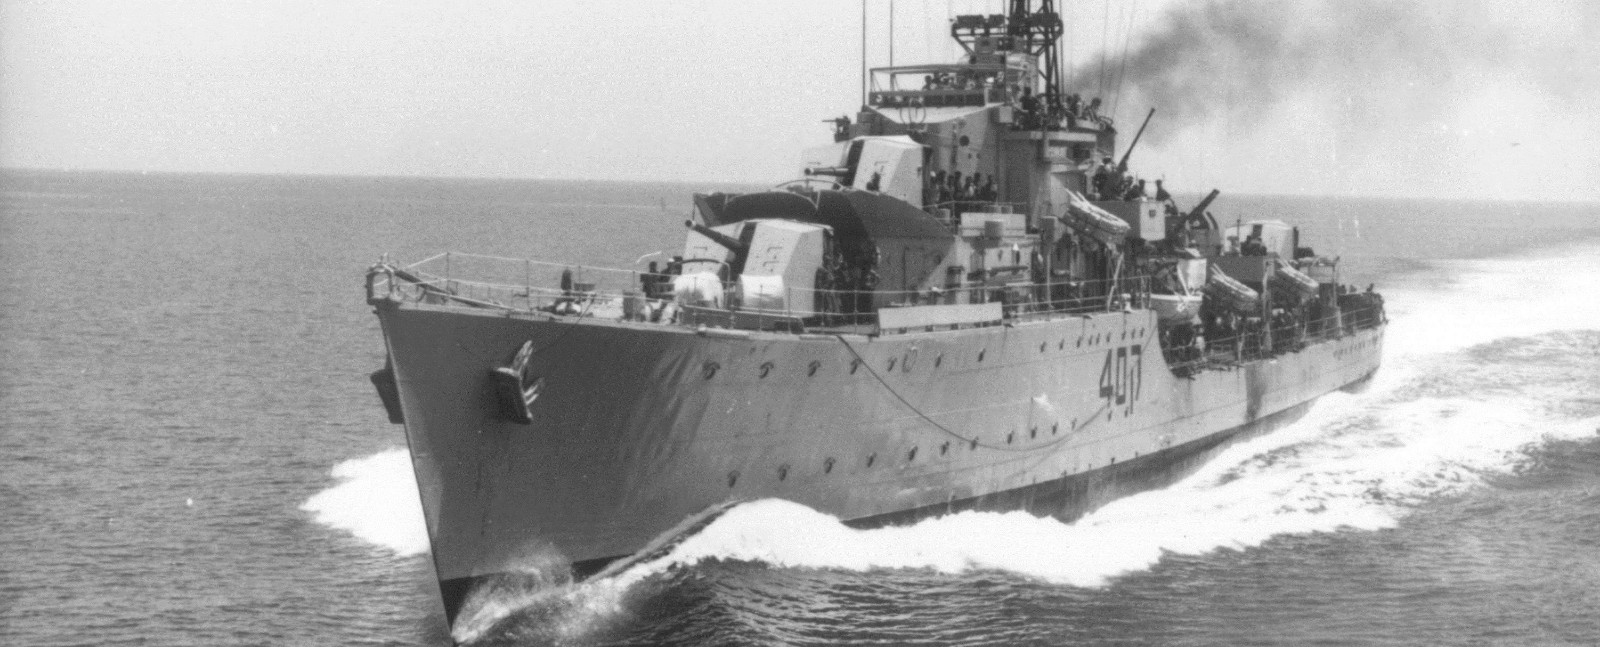 埃及海军使用苏制"冥河"导弹,击沉了以色列海军的驱逐舰埃拉特号(ins